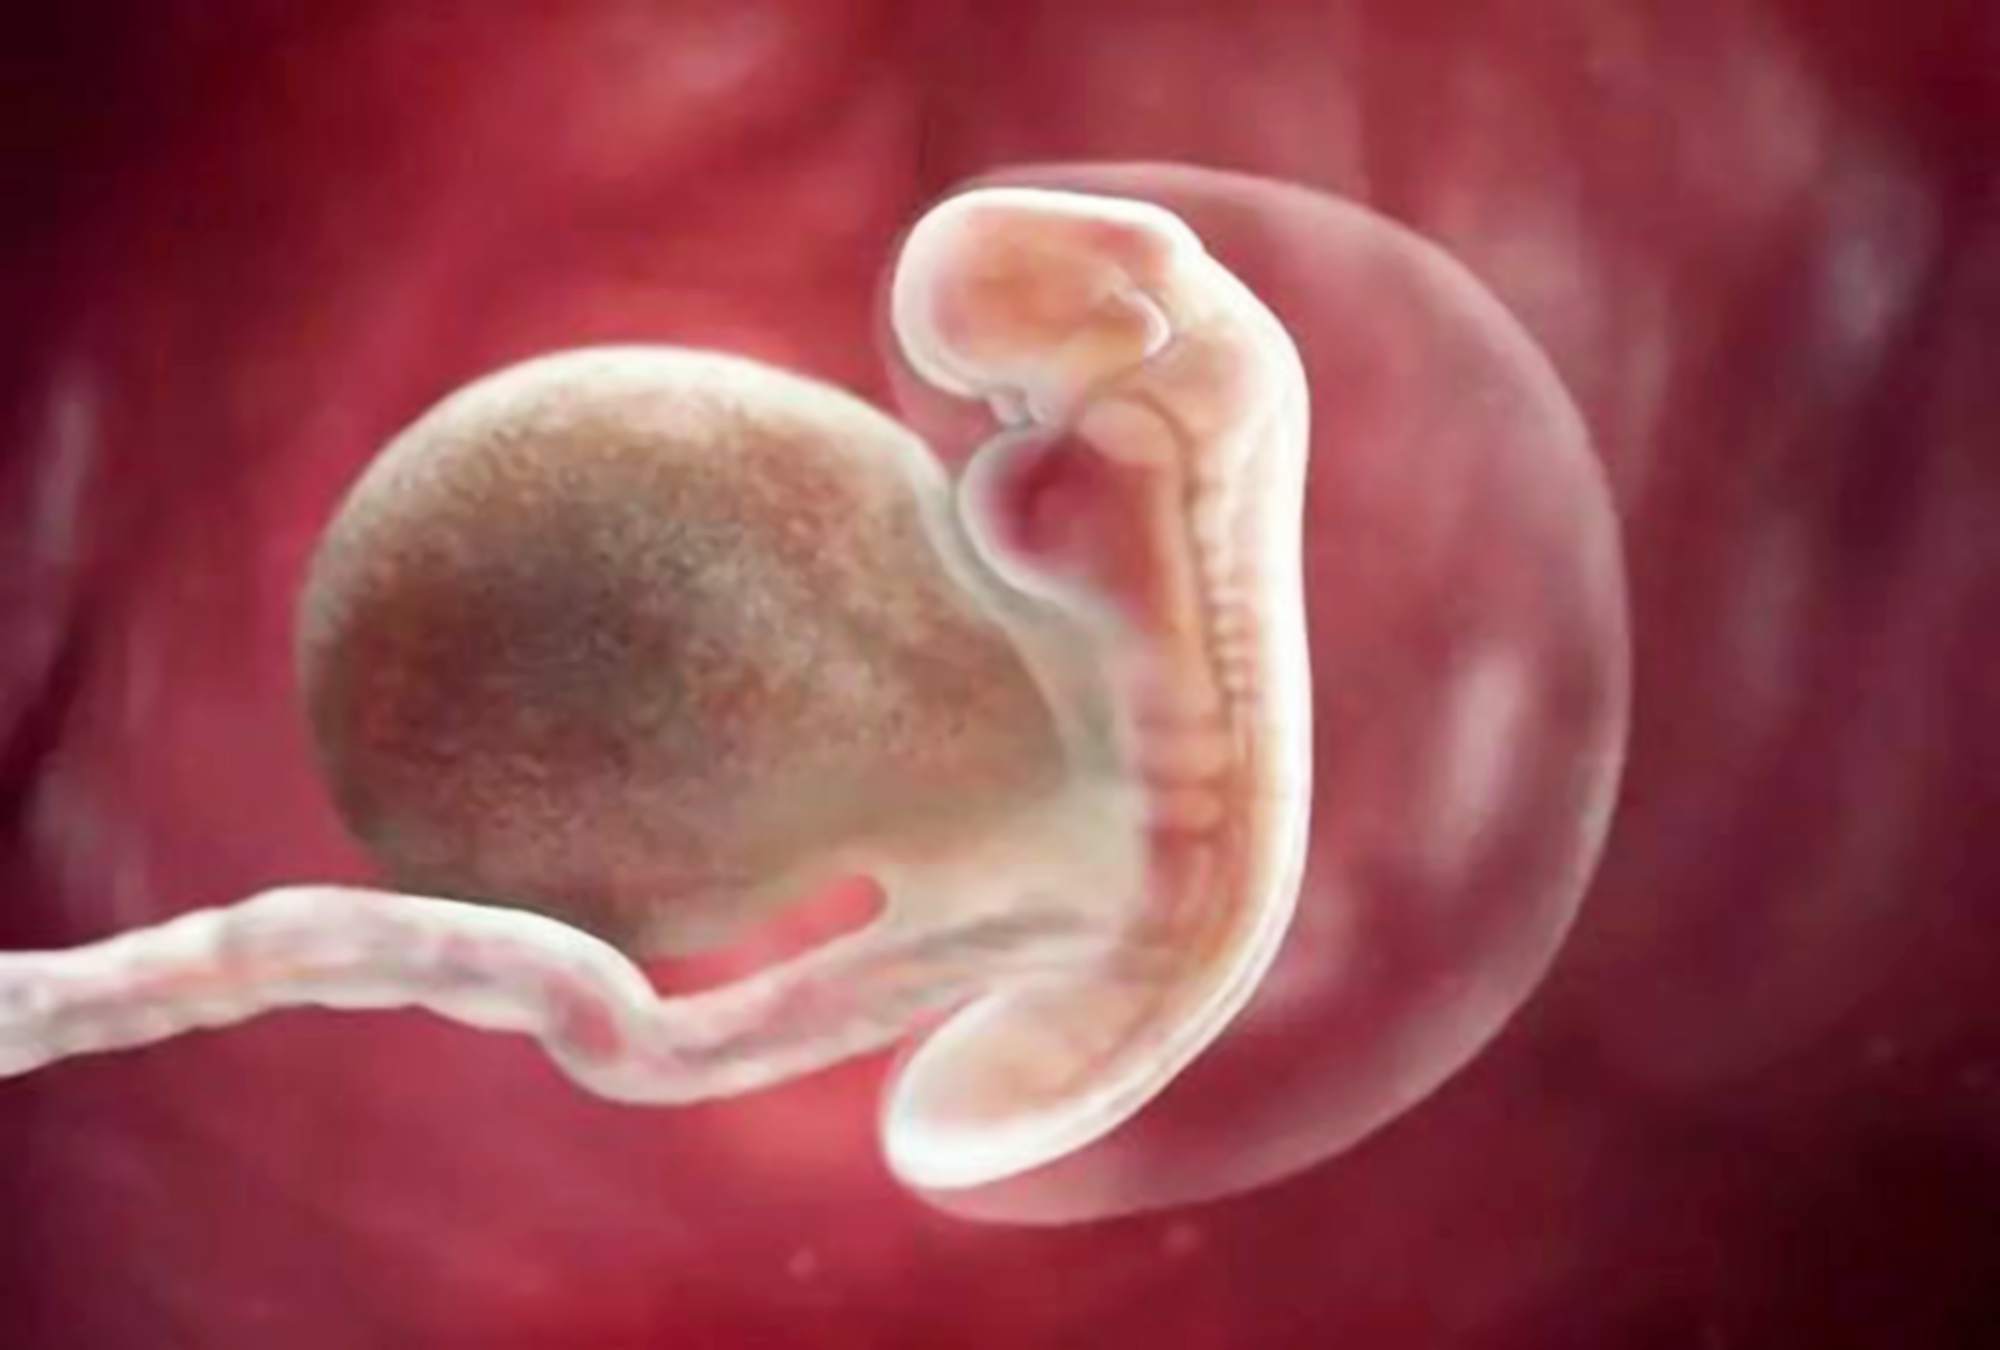 孕后期内脏被顶的图片图片